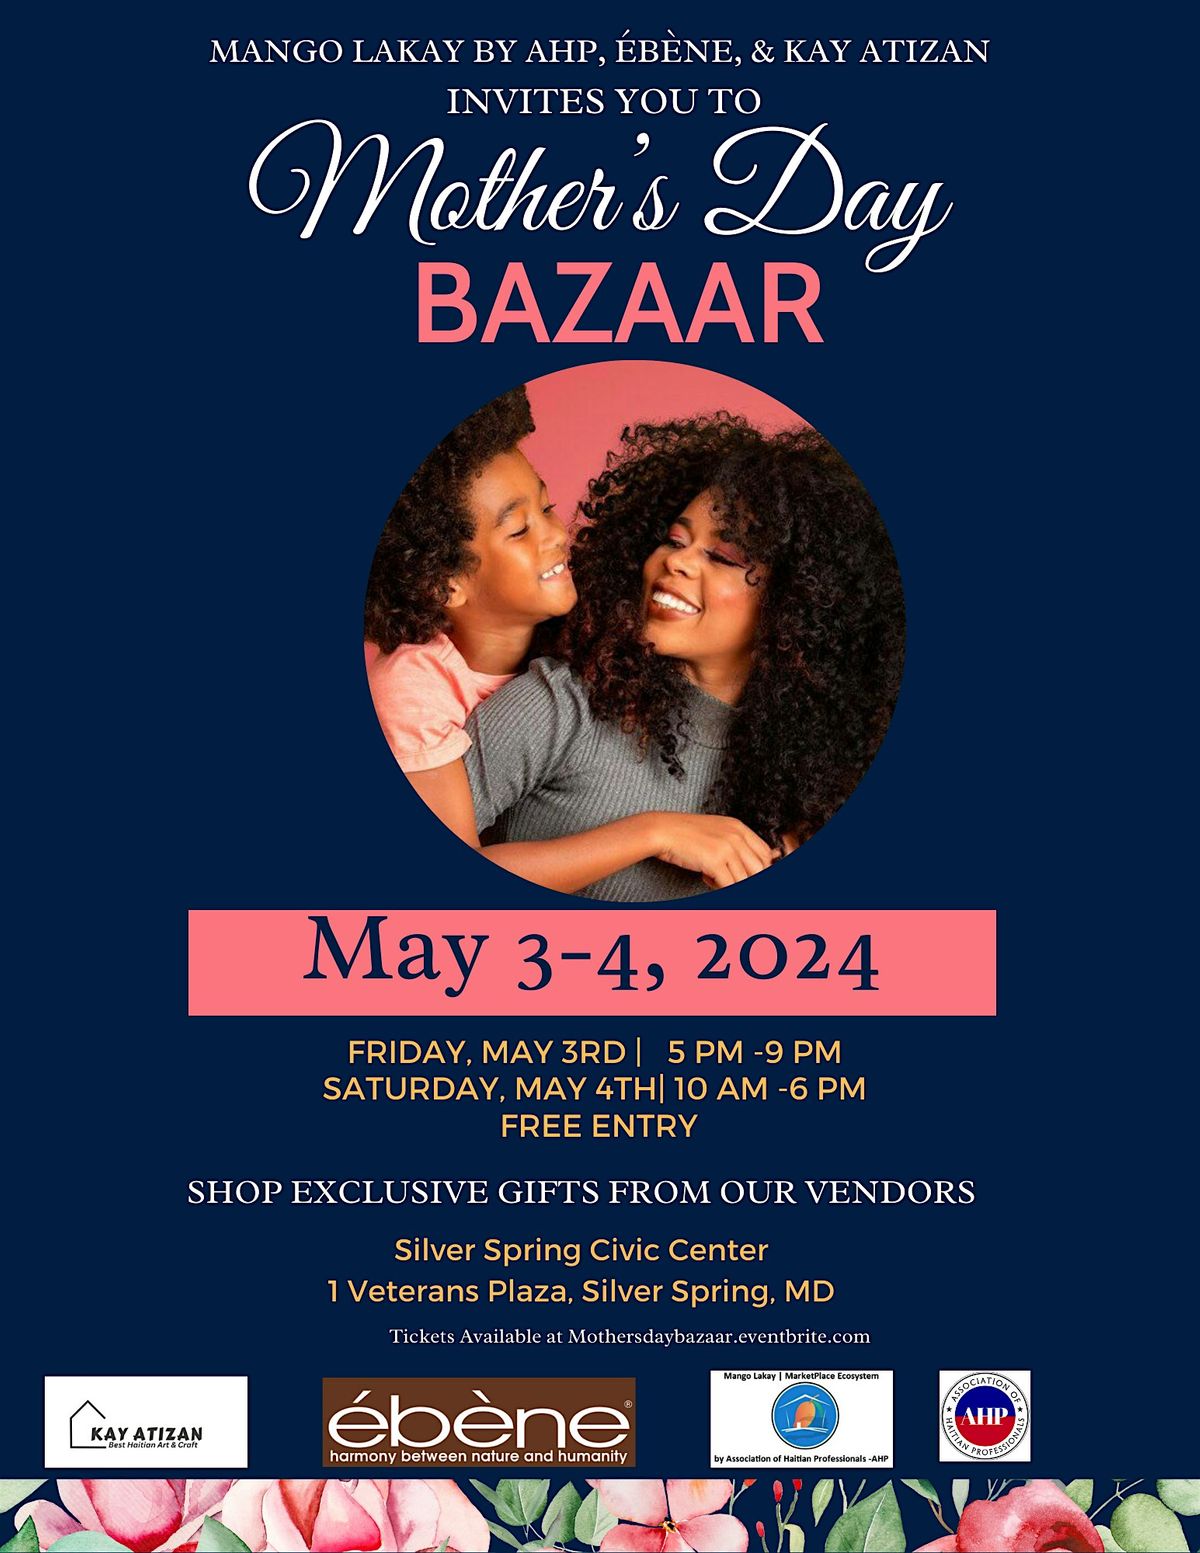 Mango Lakay by AHP, \u00c9b\u00e8ne, & Kay Atizan invite you to Mother's Day Bazaar